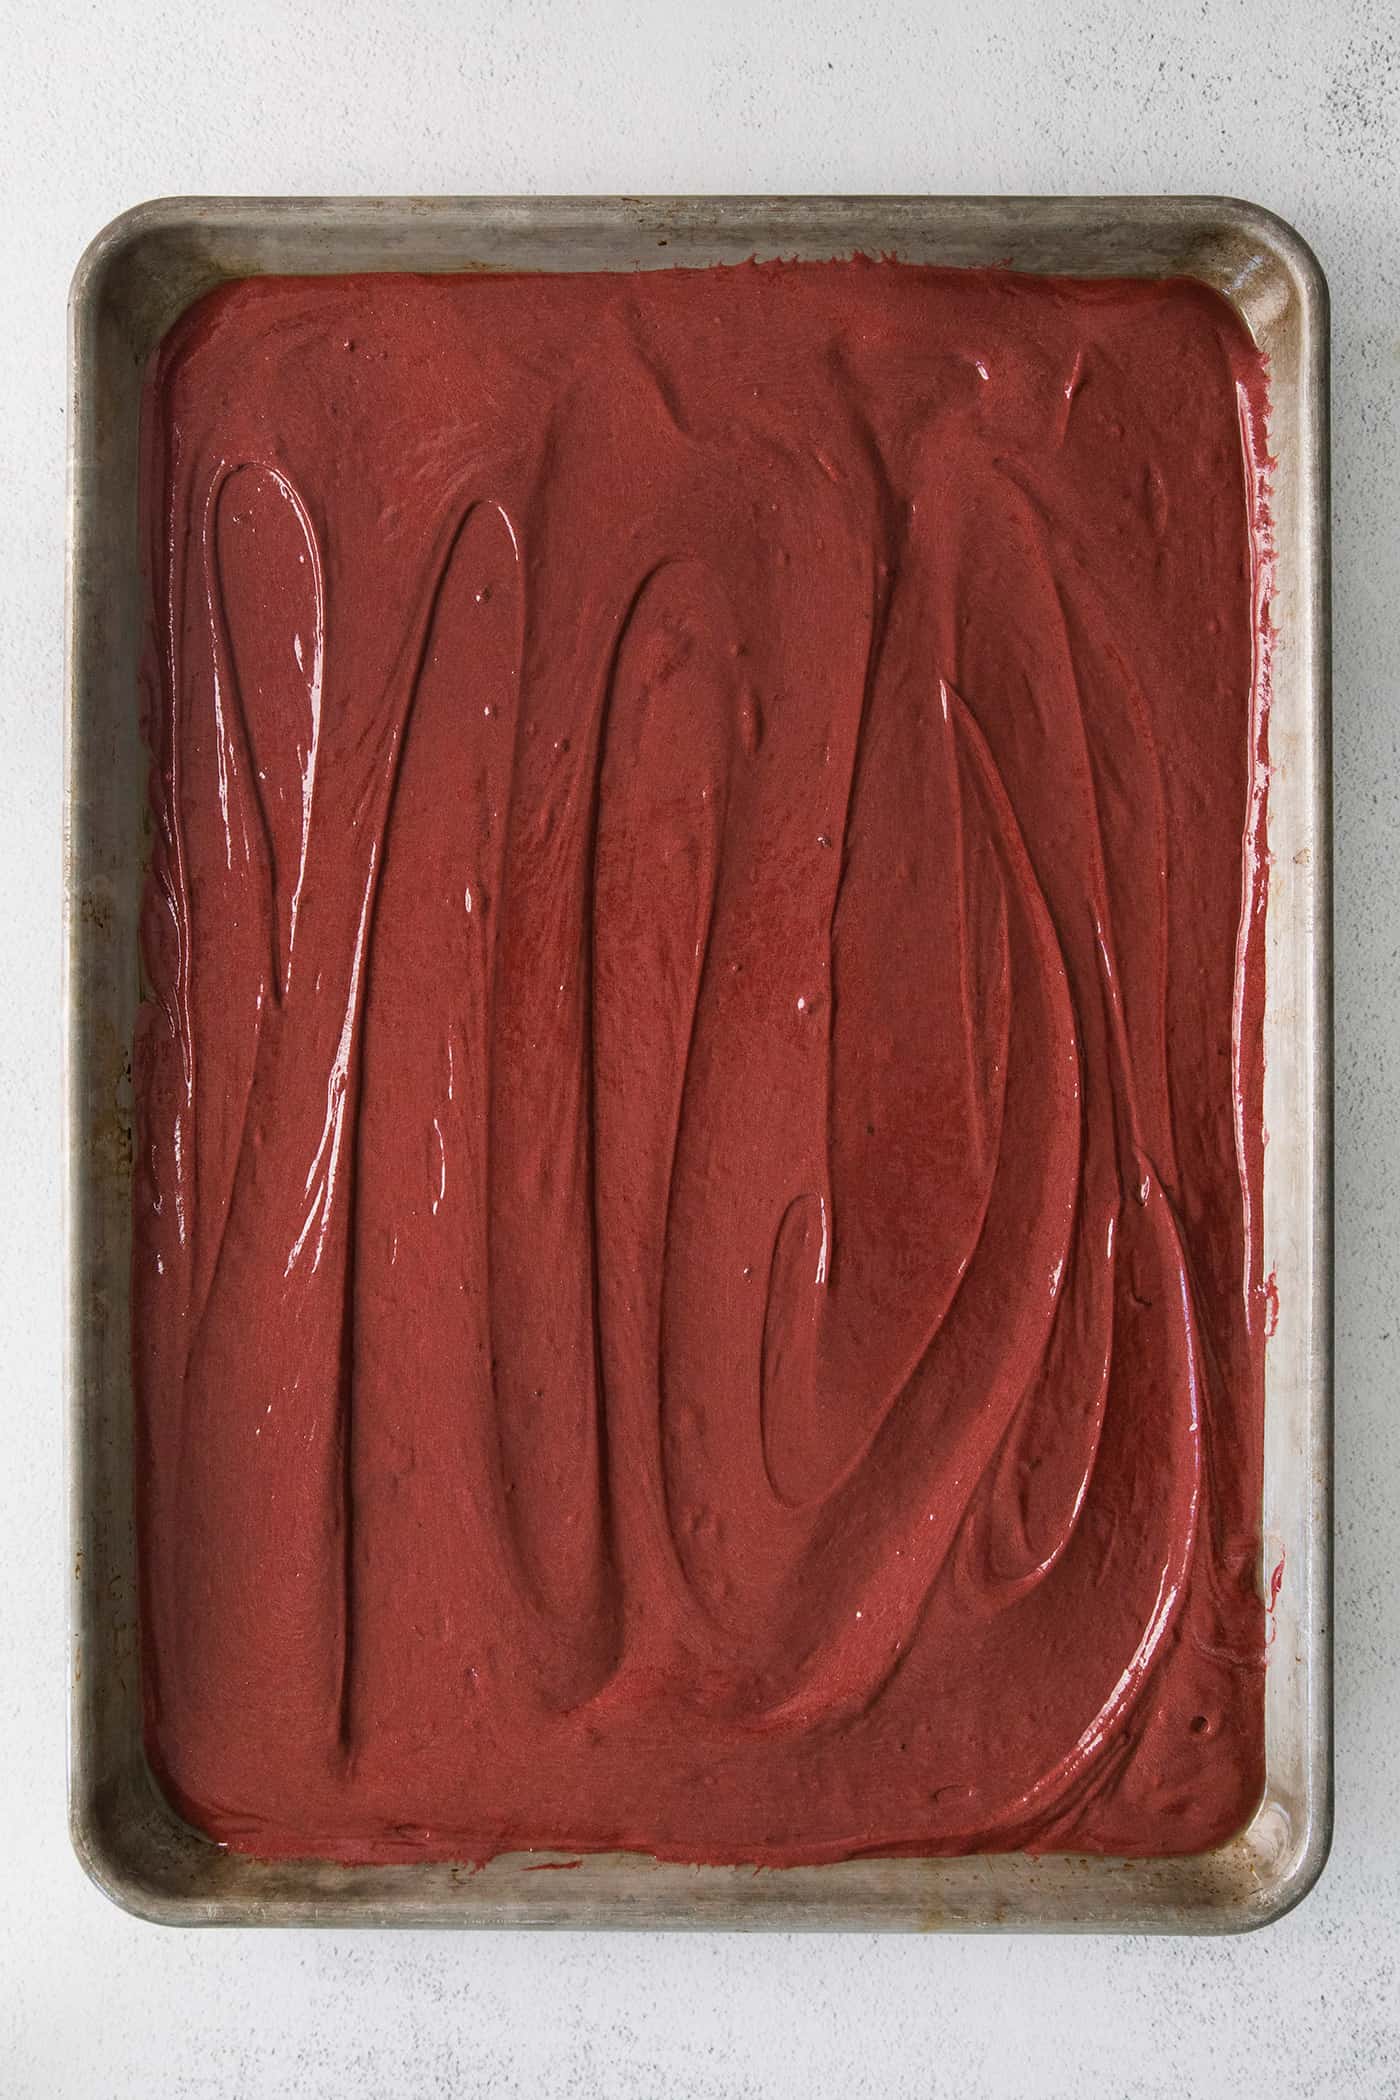 Red velvet cake batter in a sheet pan